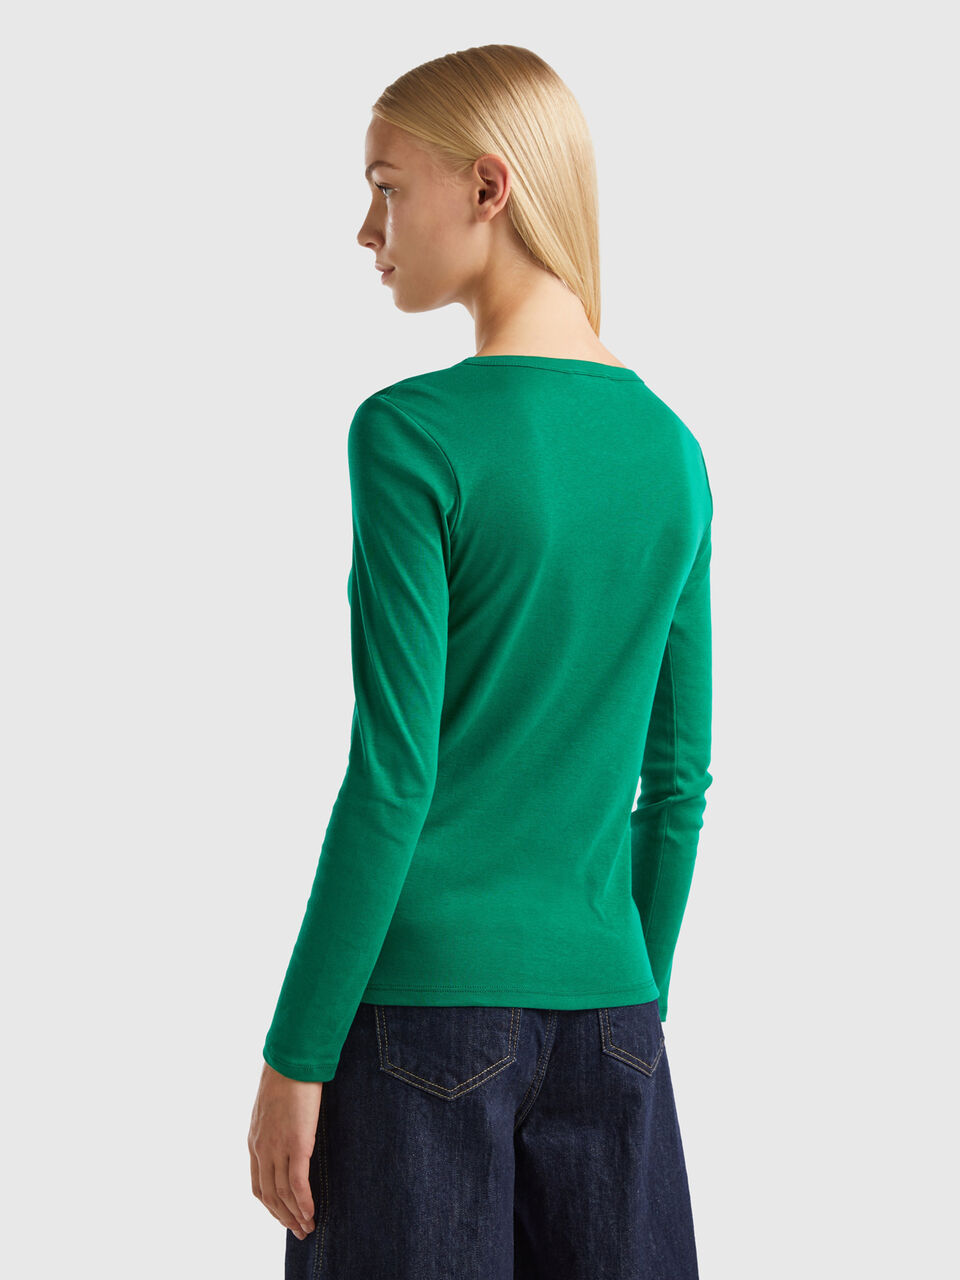 Camiseta de manga larga de algodón pesado (G540B) verde irlandés, L  (paquete de 12)